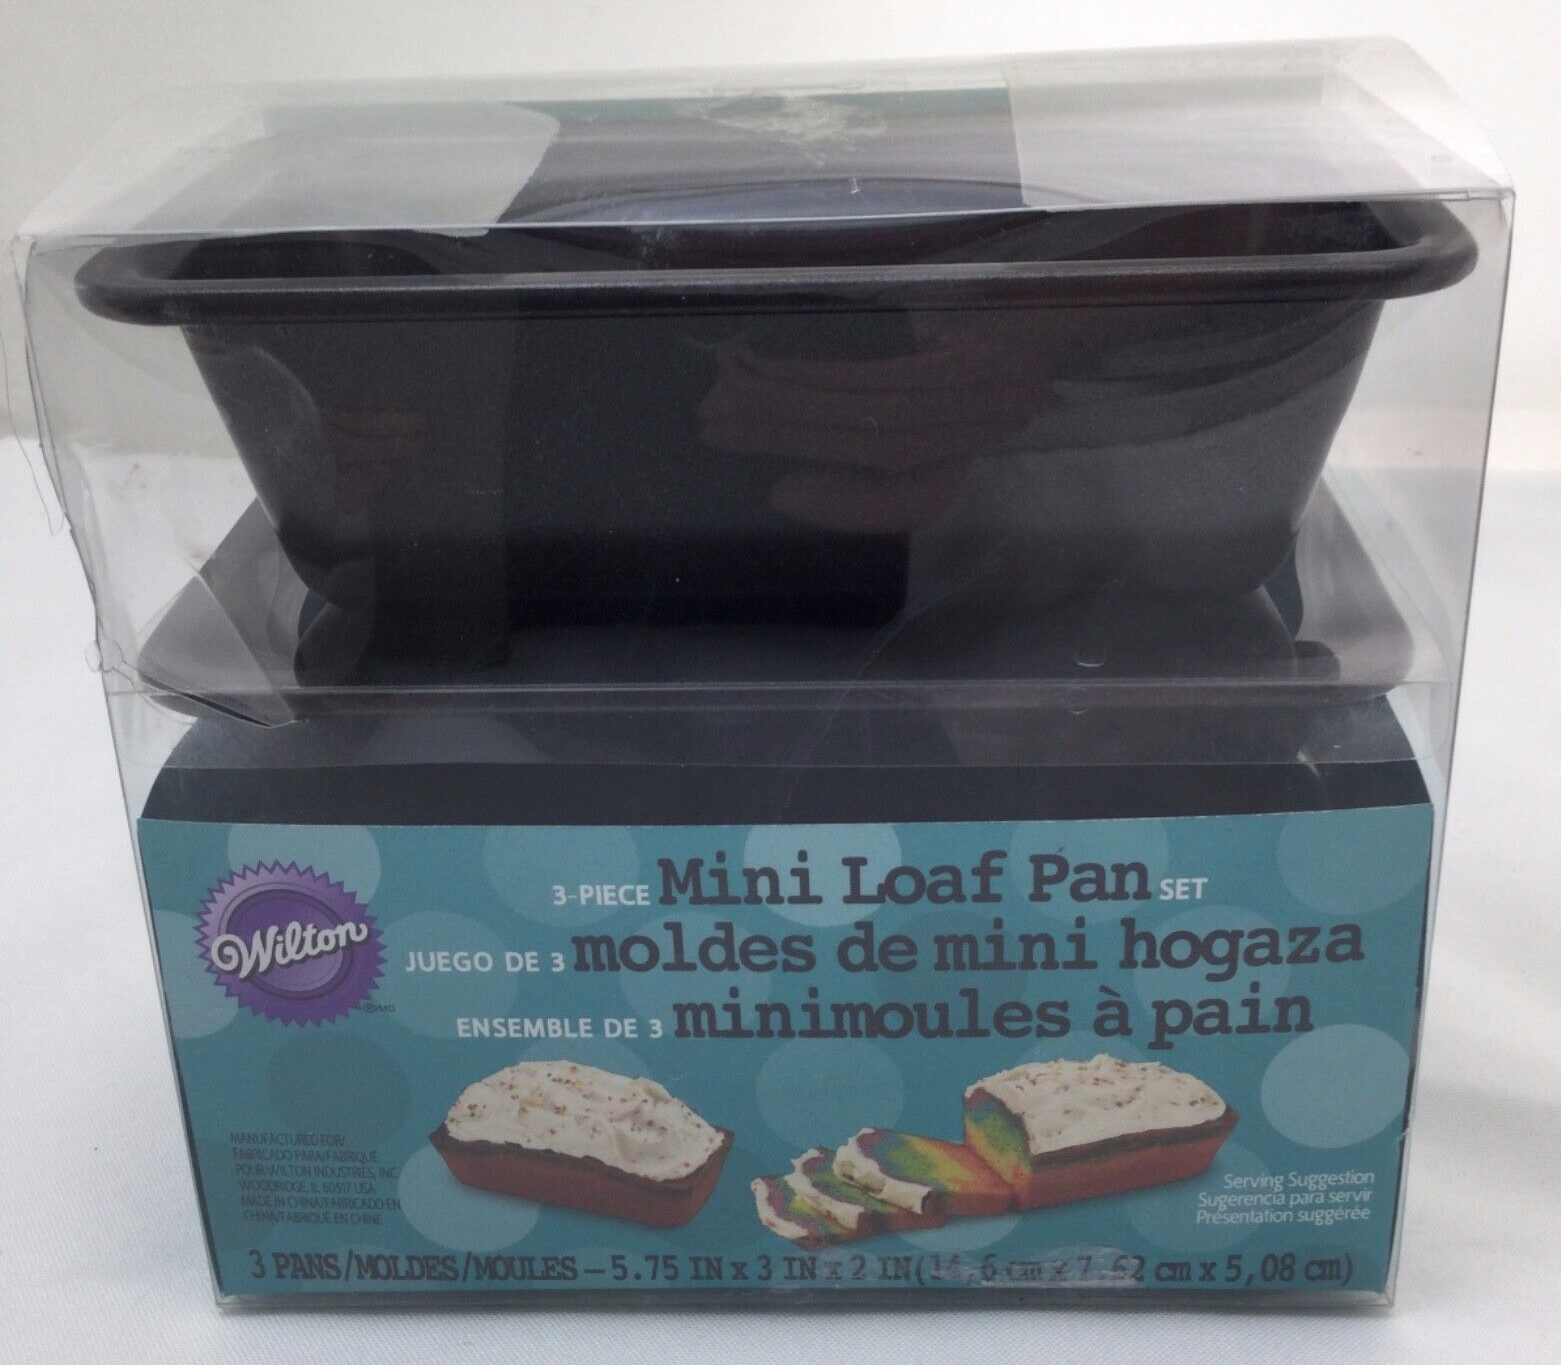 USA Pan Small Bread Loaf Baking Pan - 3 Set